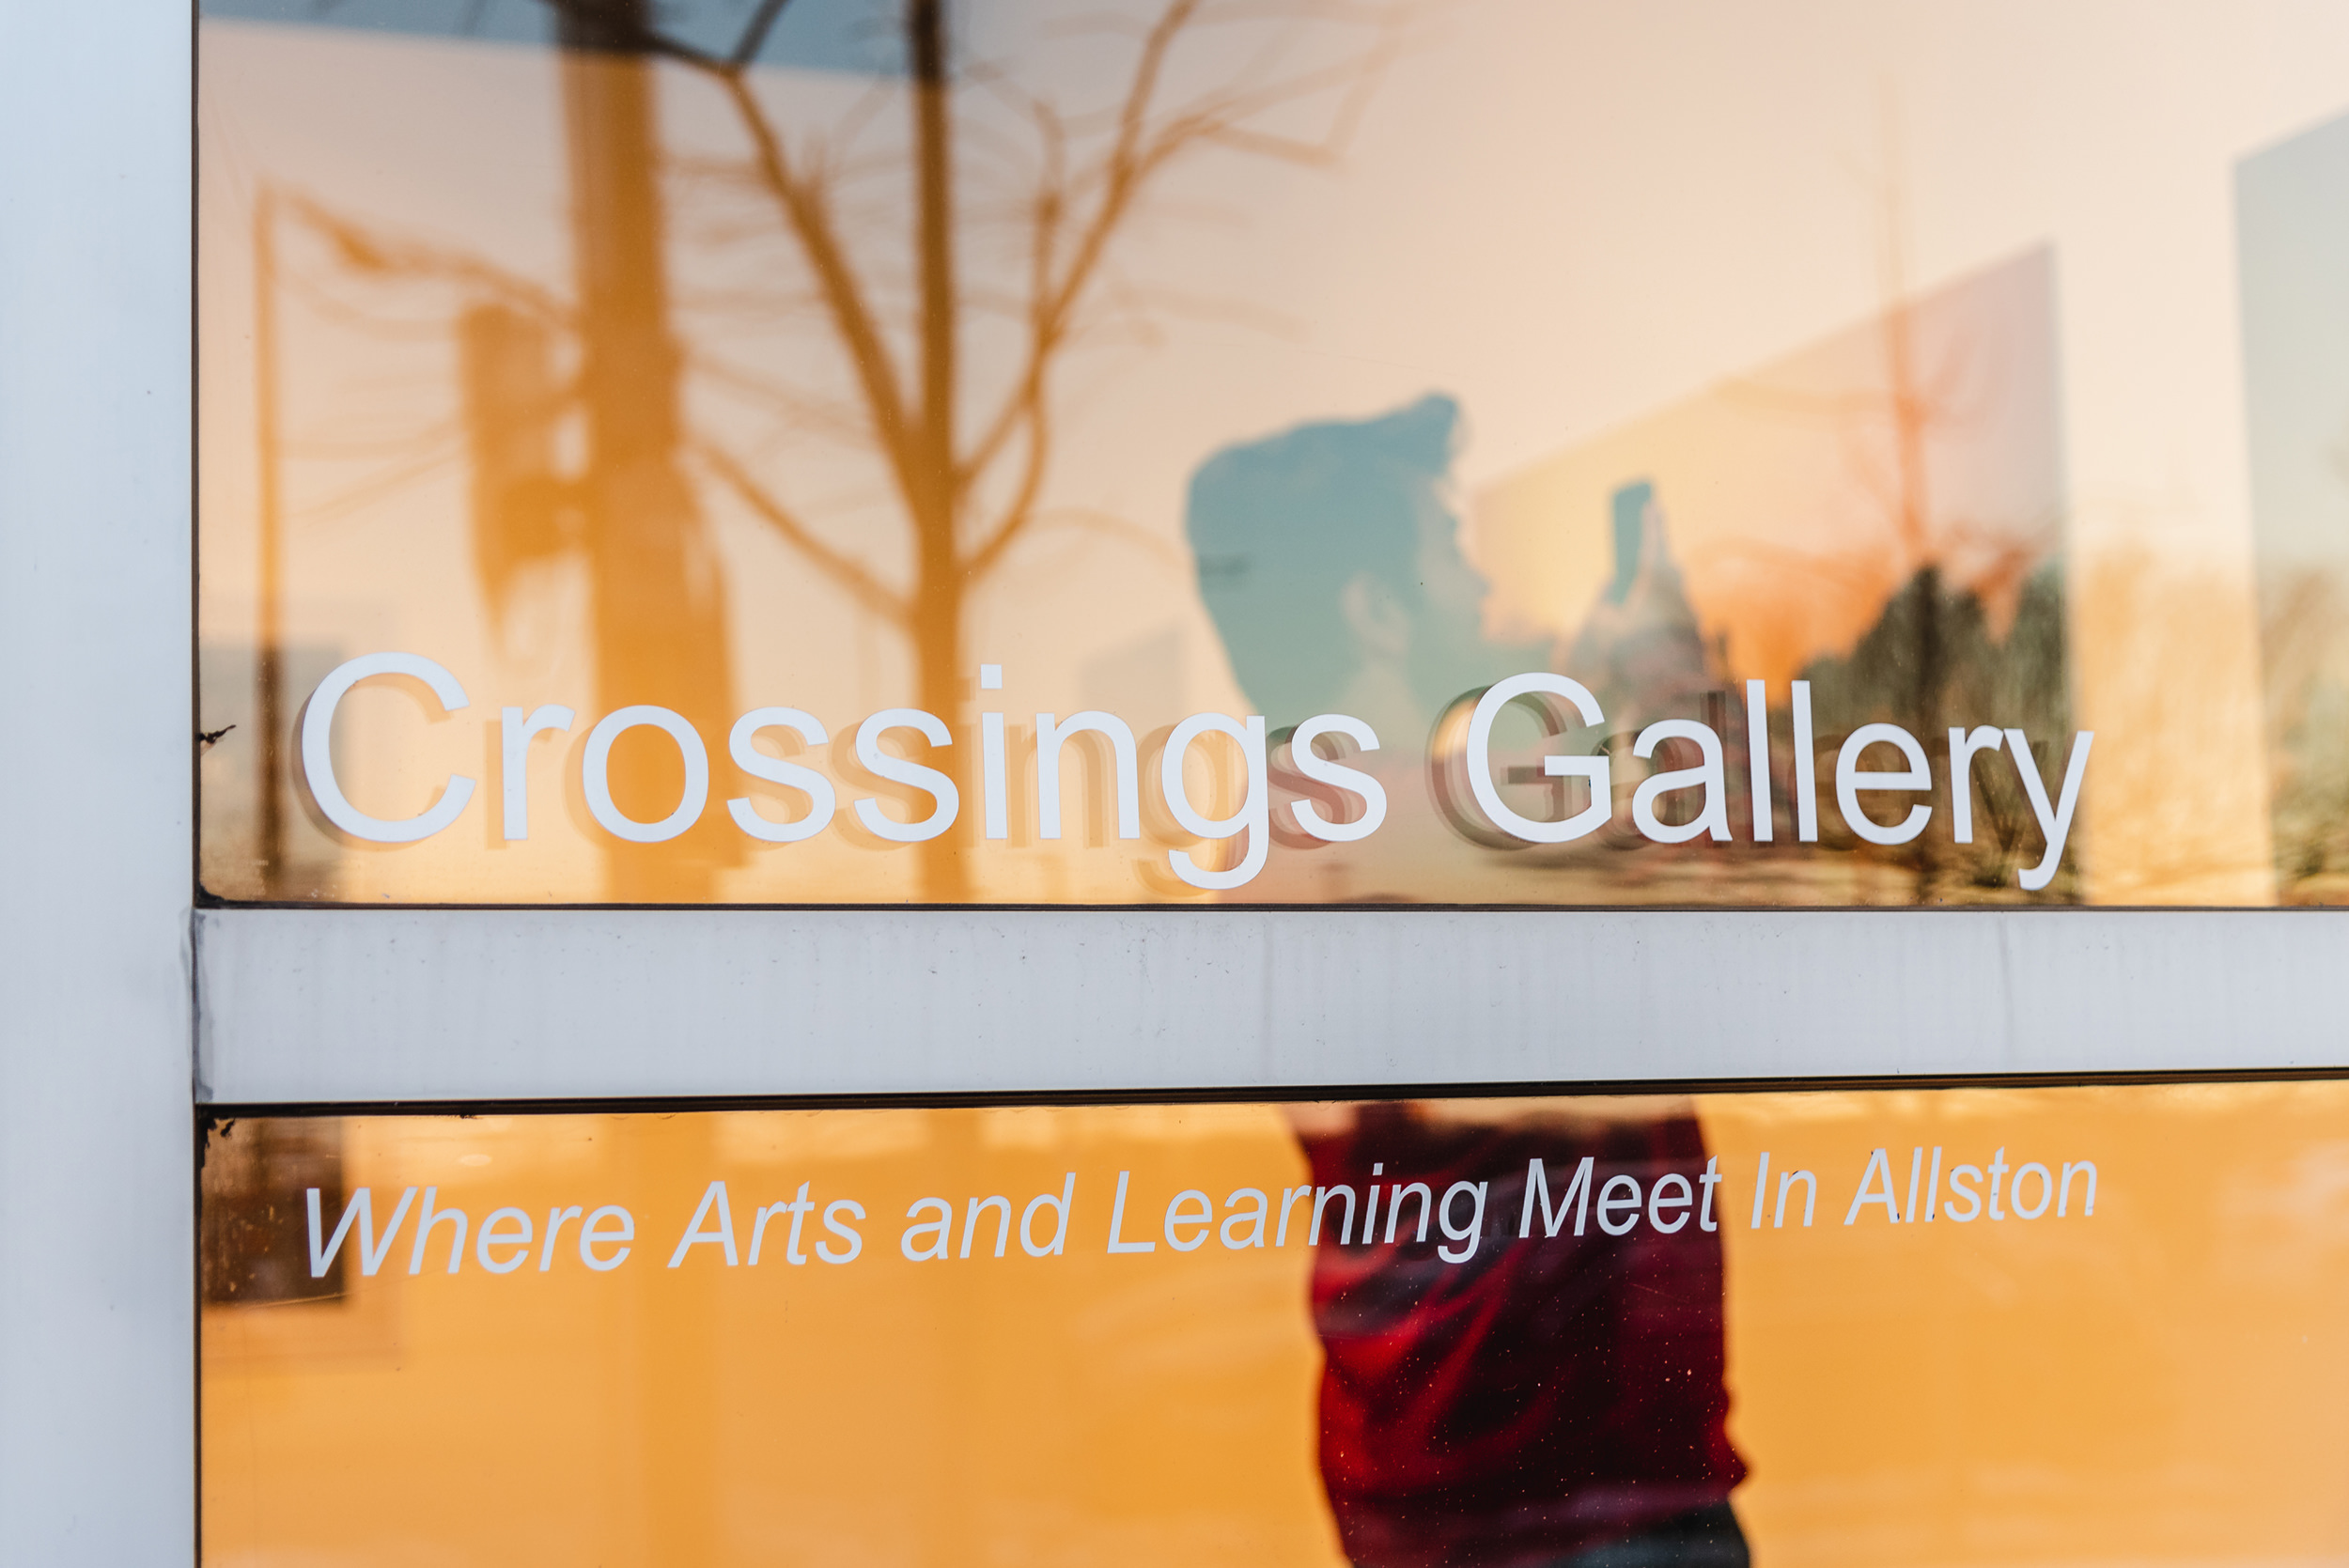 The Crossings Gallery.